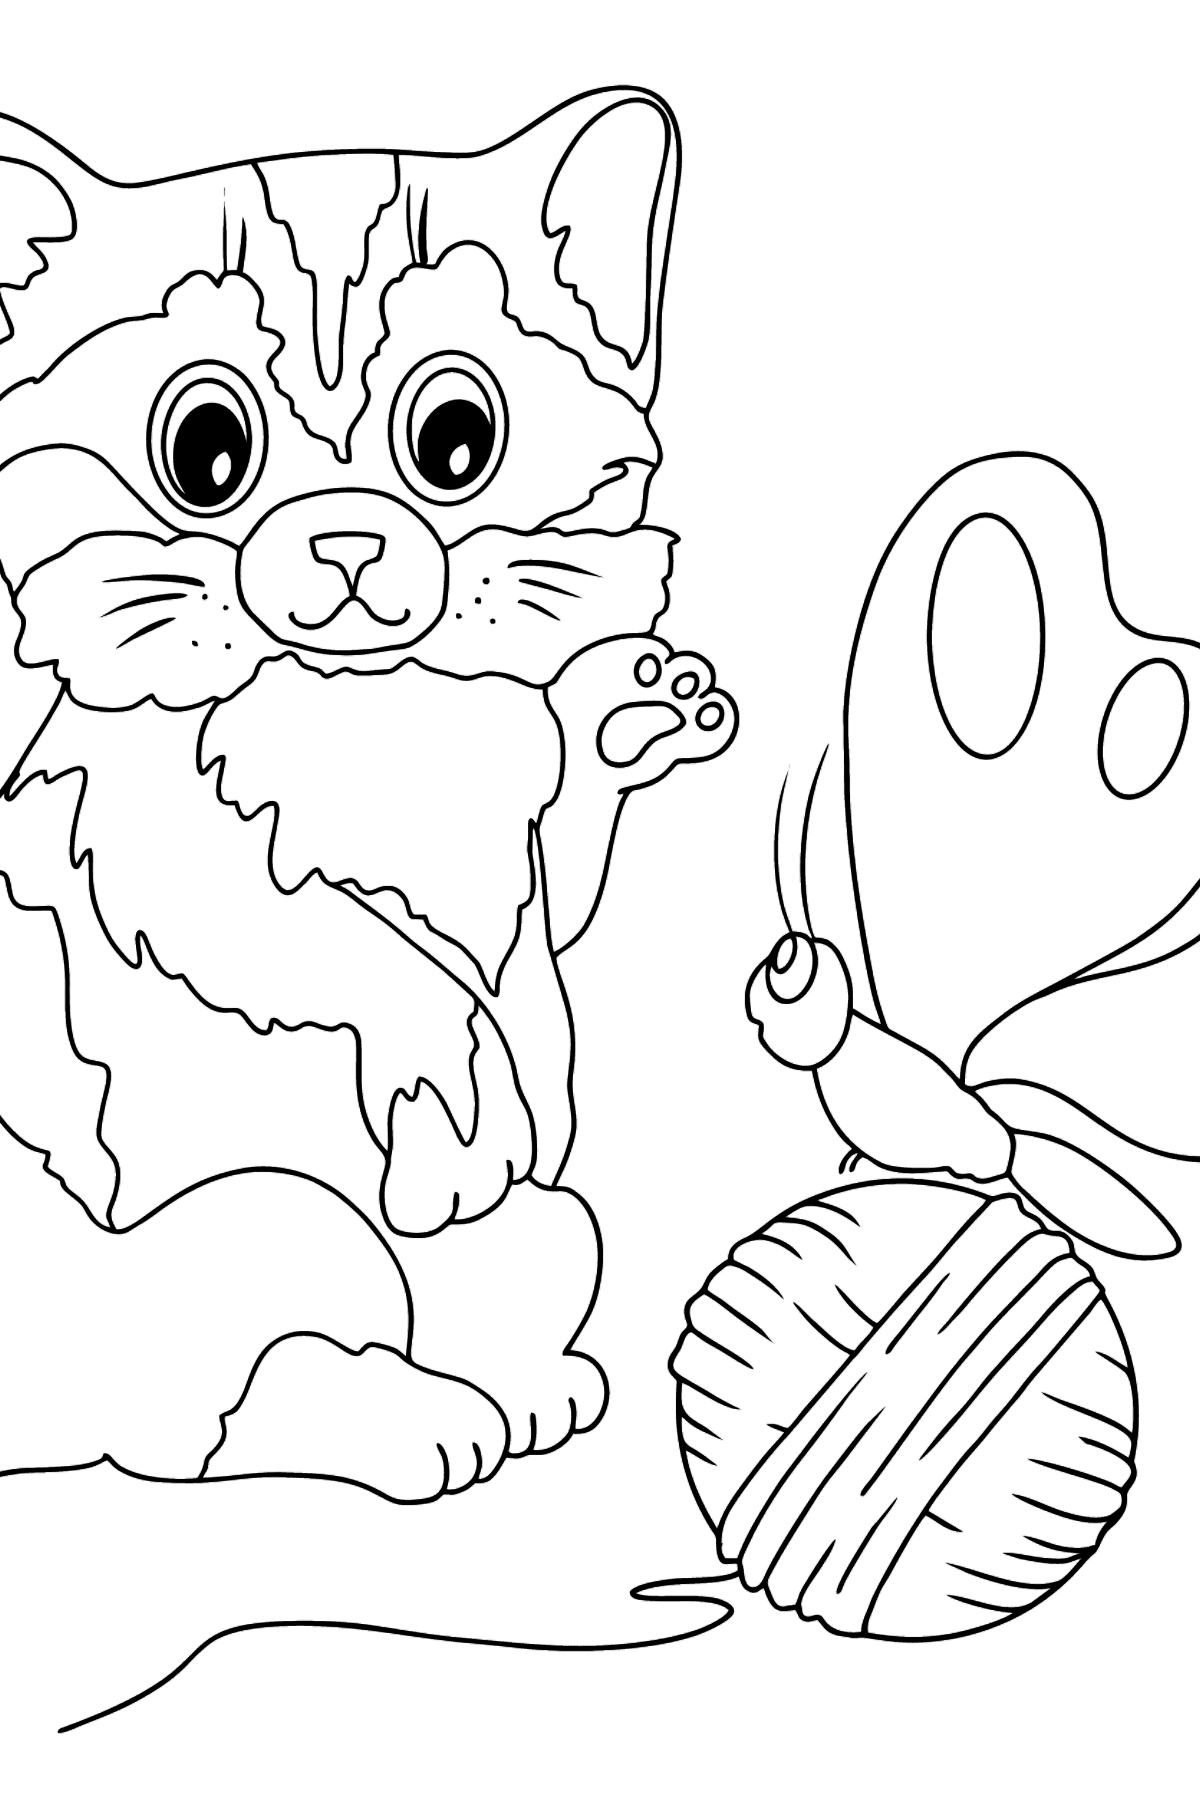 61 Baby Katze Ausmalbild - Malvorlagen Für Kinder Zum über Ausmalbilder Katzenbaby